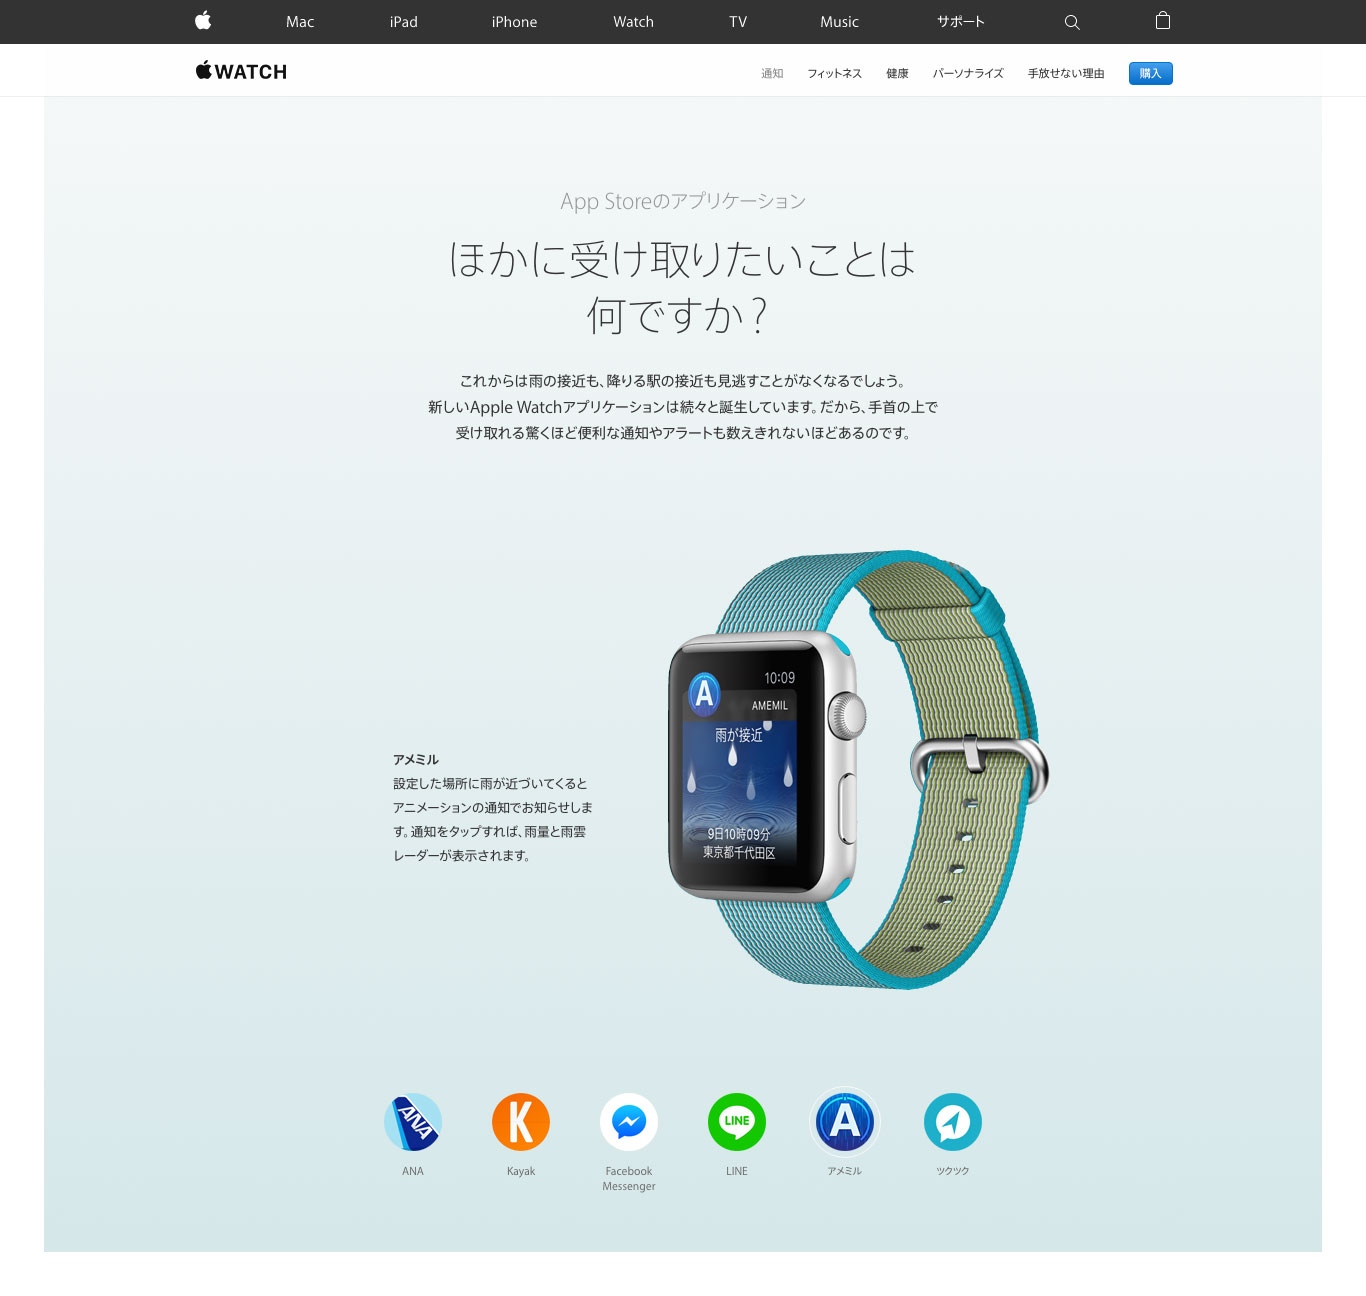 Apple公式サイトで「アメミル」アプリが紹介されている写真